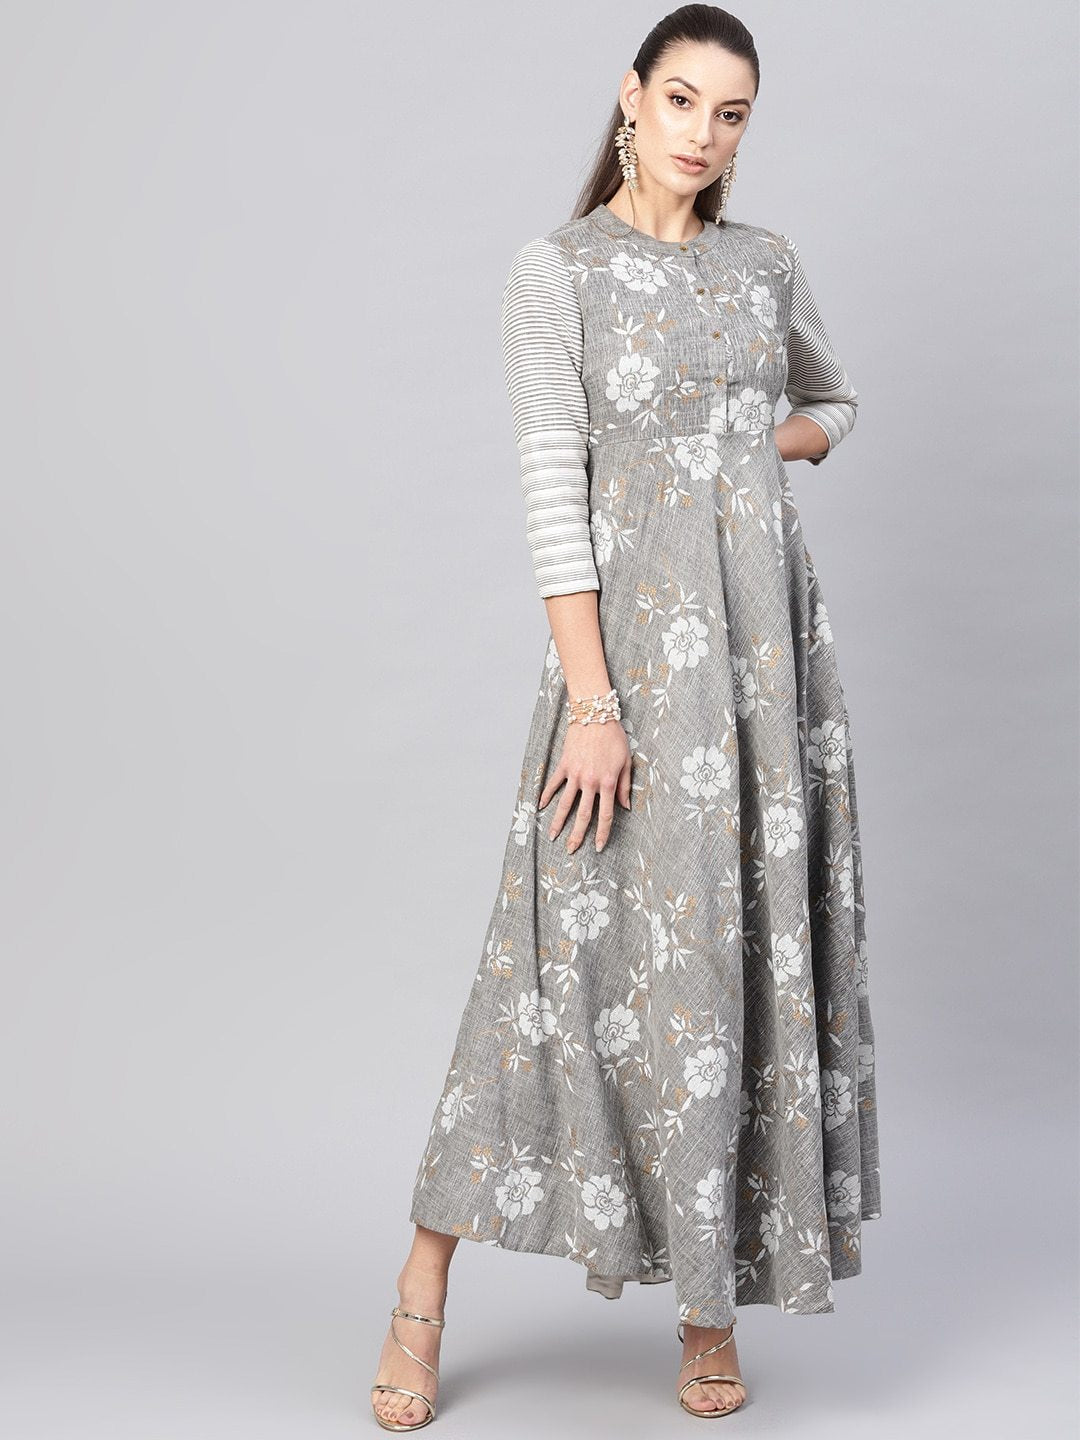 Women's  Grey & White Floral Print Maxi Dress - AKS